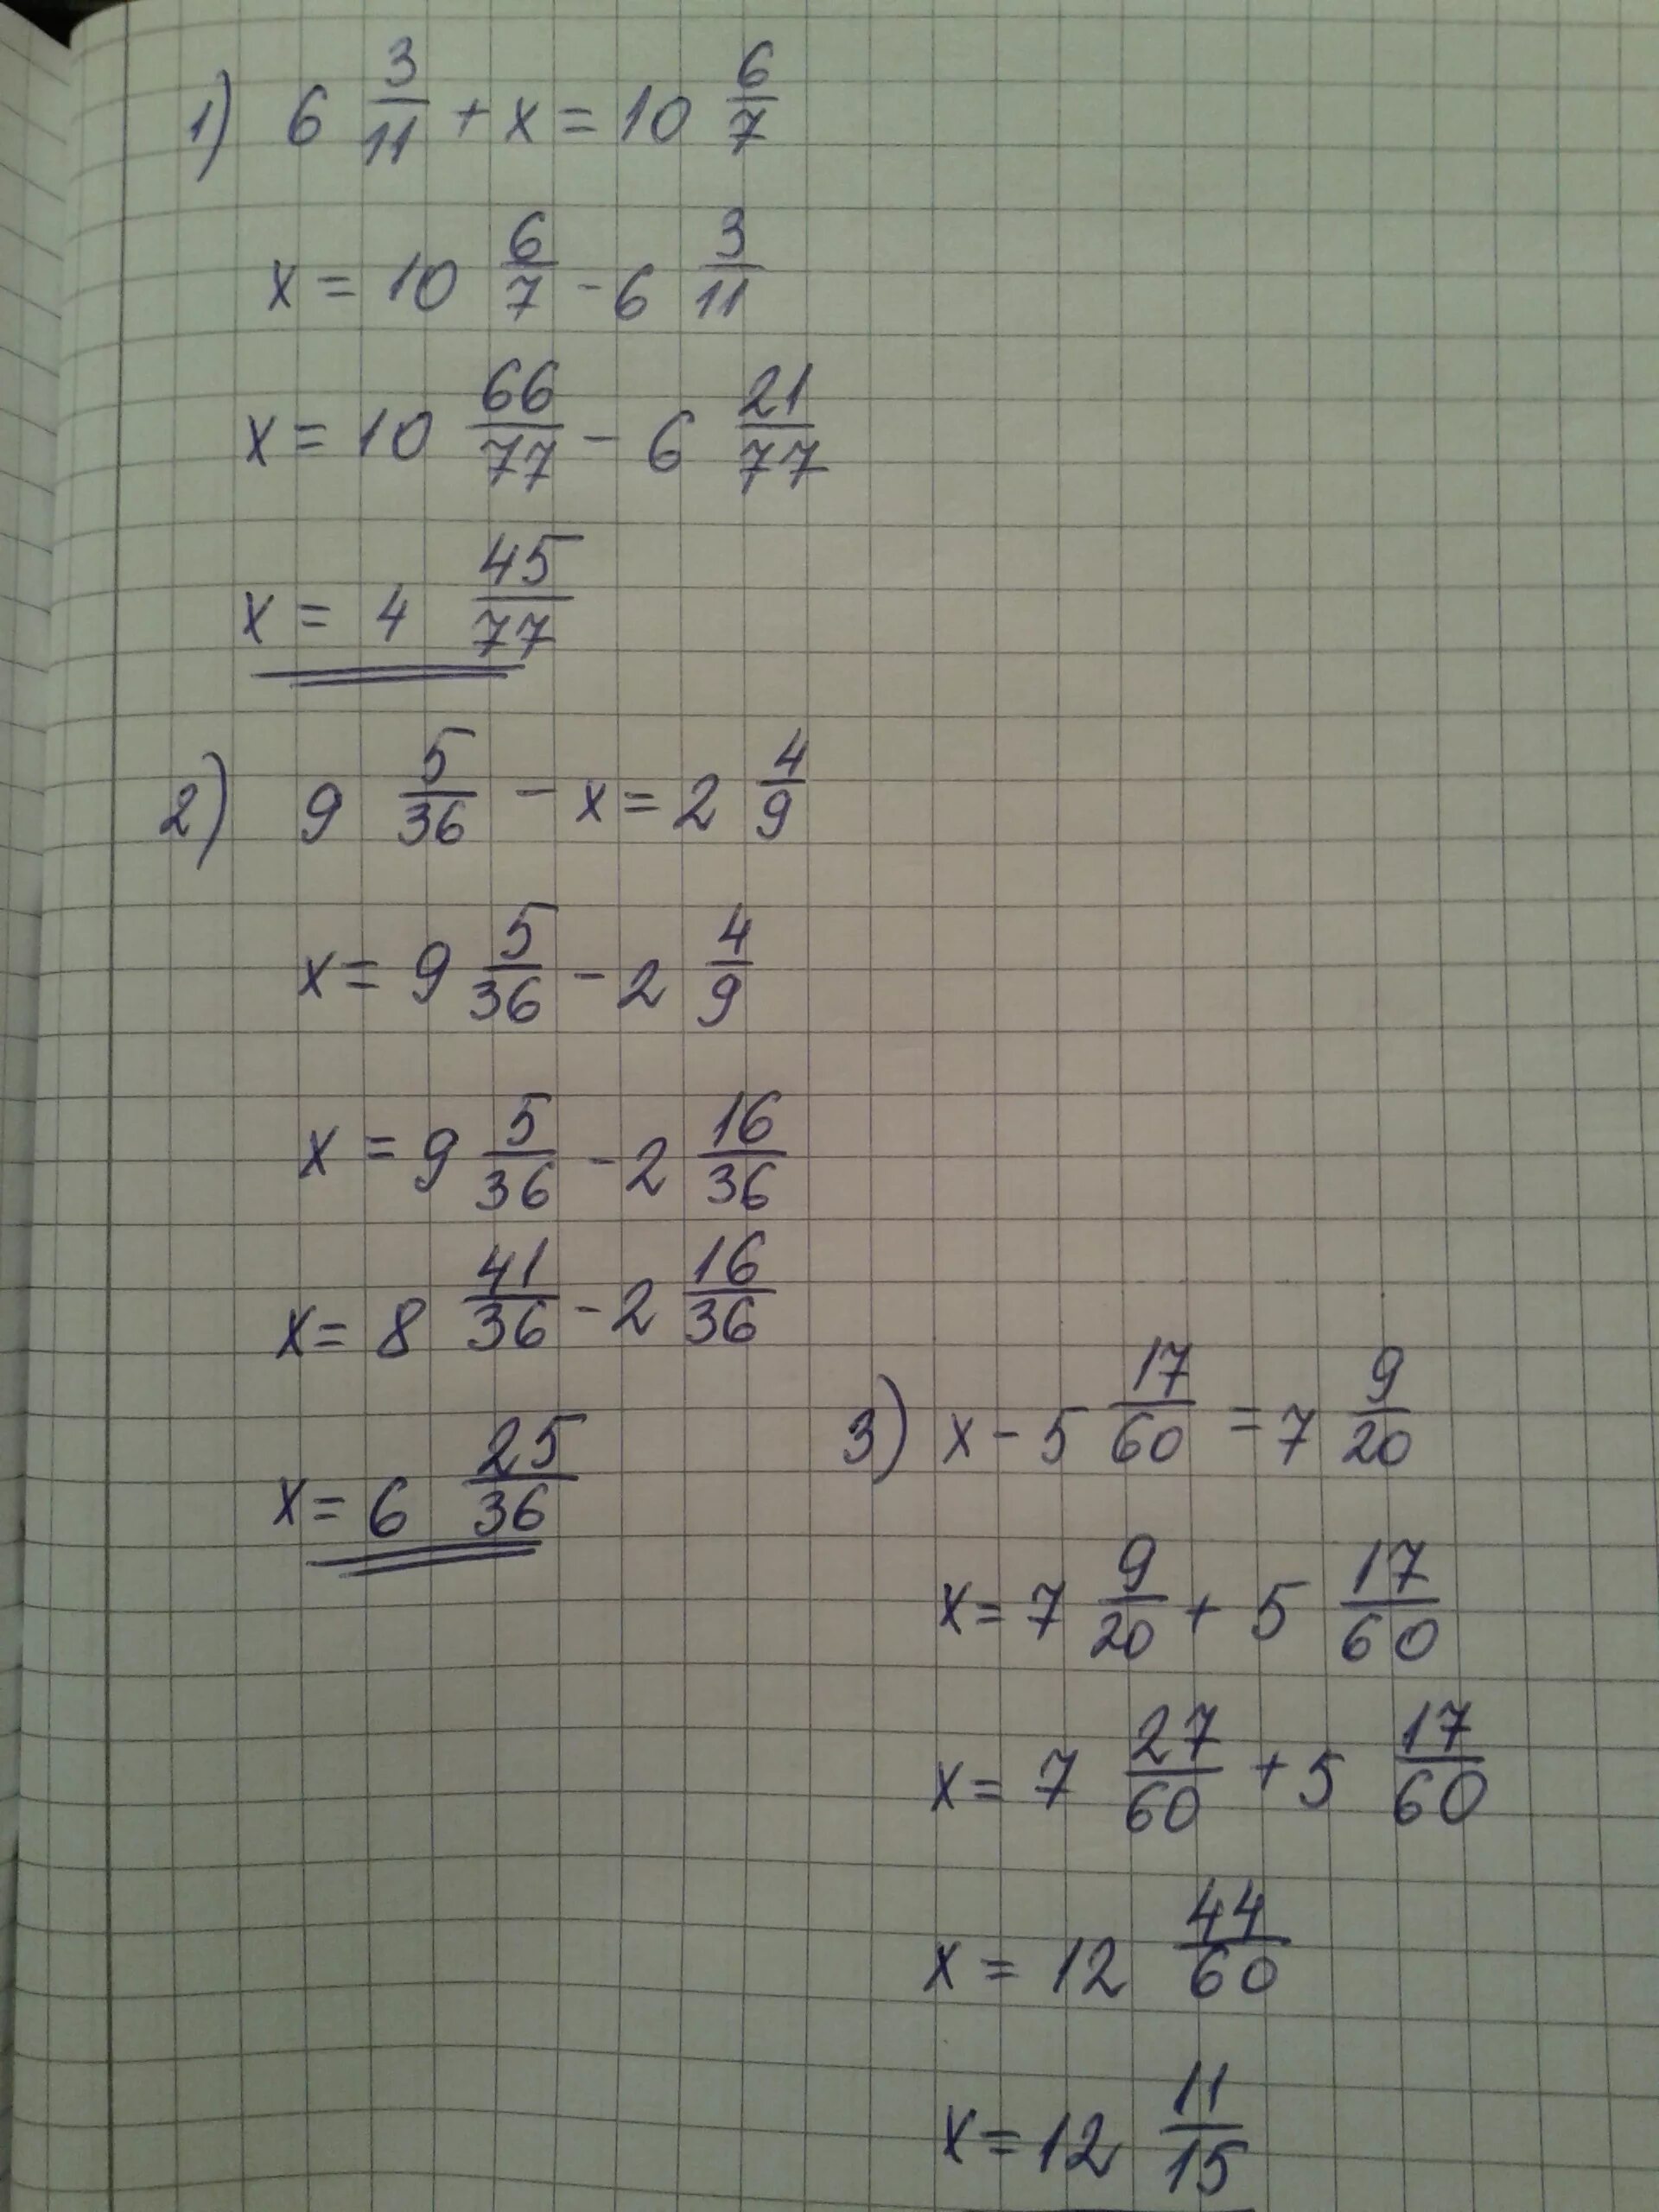 Решите уравнение 9x 7 0. Х2-11х/6+1/2. Х-3 7/9=5 1/6. 7-2х=9-3х 11х=6+5(2х-1). (Х-1):2-(У-1):6=5/3.